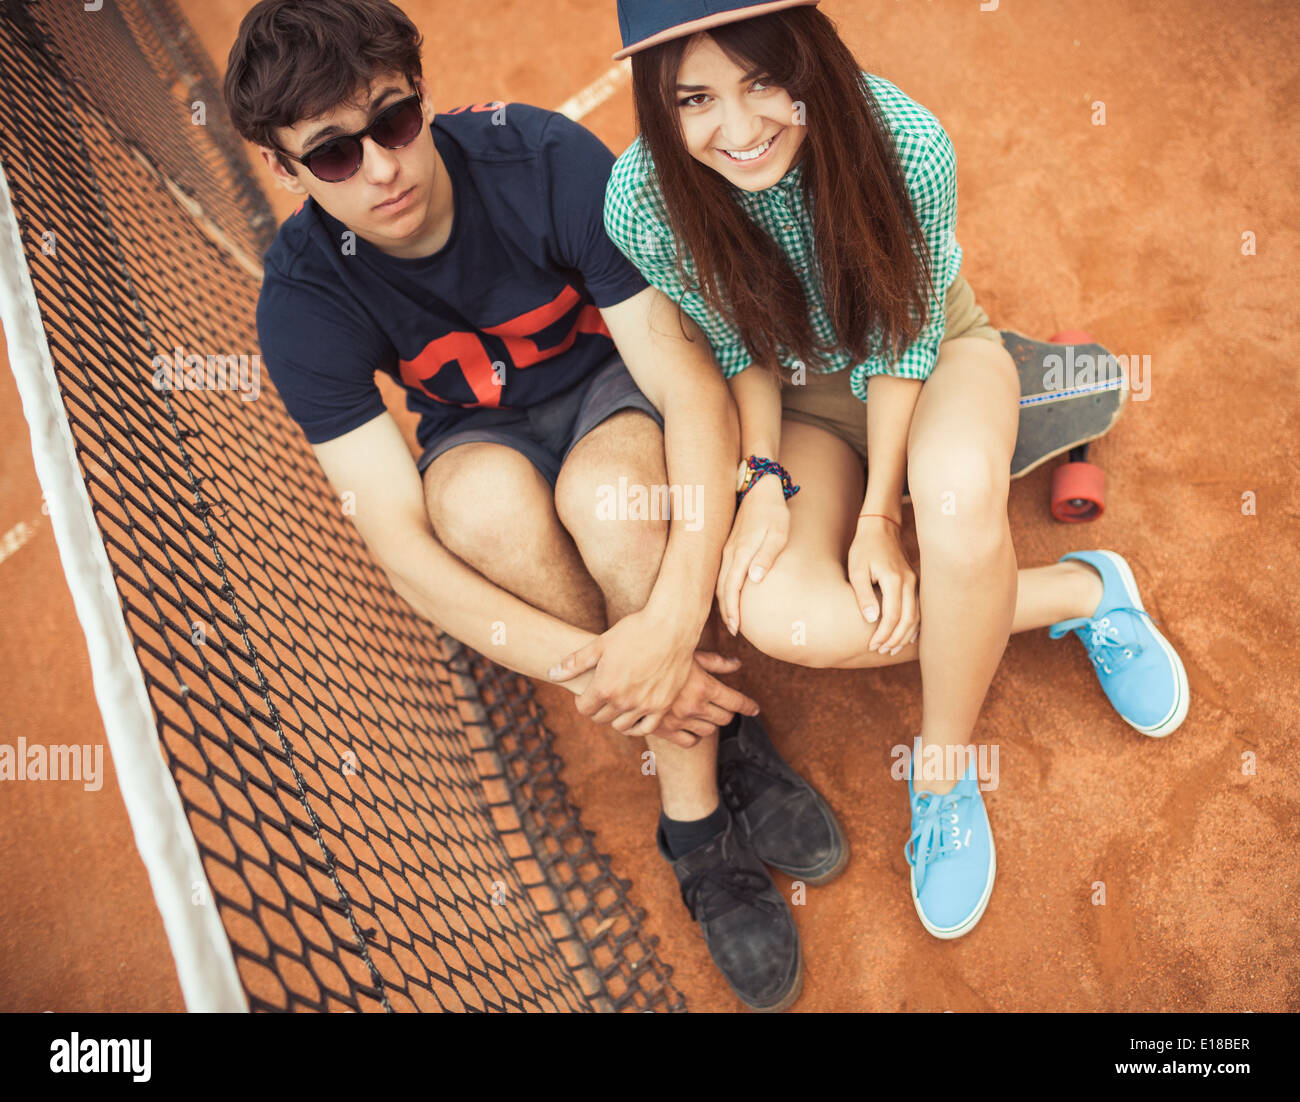 Junge schöne Paar sitzt auf einem Skateboard auf dem Tennisplatz Stockfoto